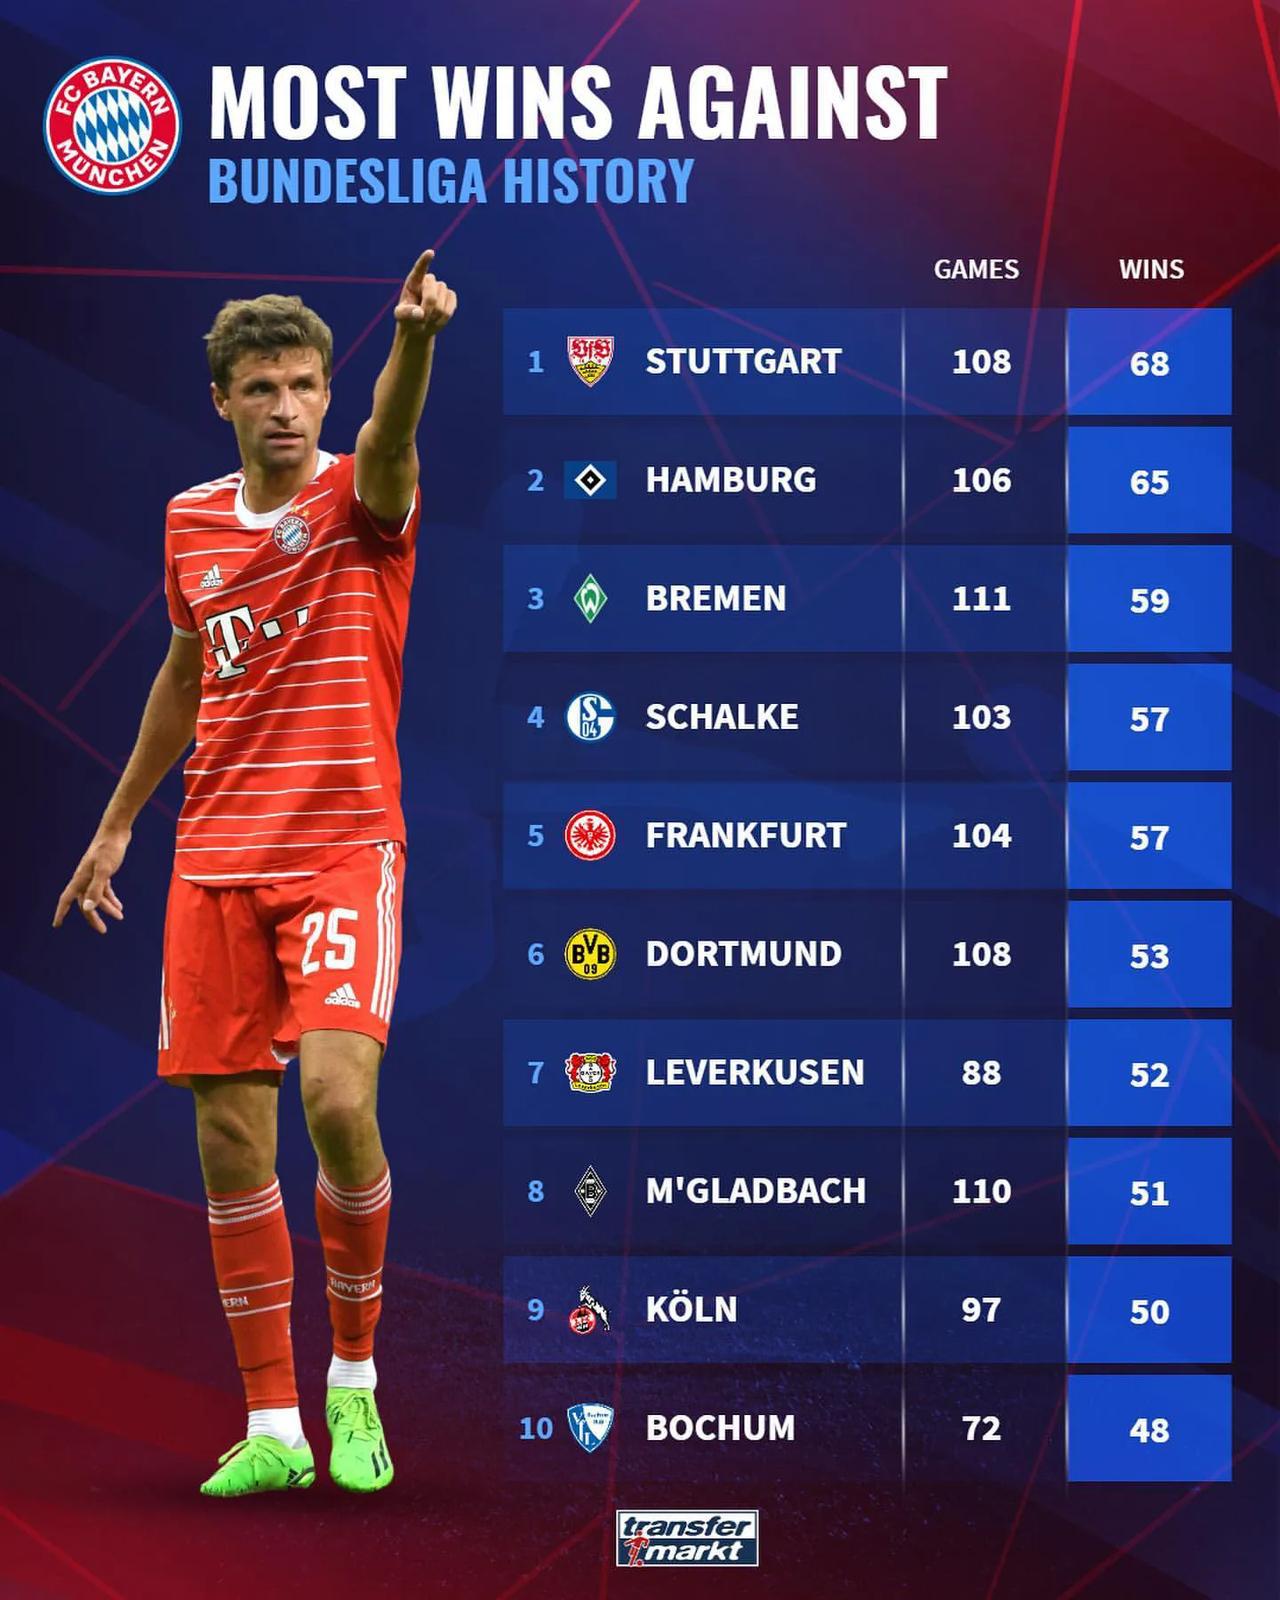 德甲历史拜仁慕尼黑击败次数最多的球队，斯图加特68次、汉堡65次、不来梅59次；